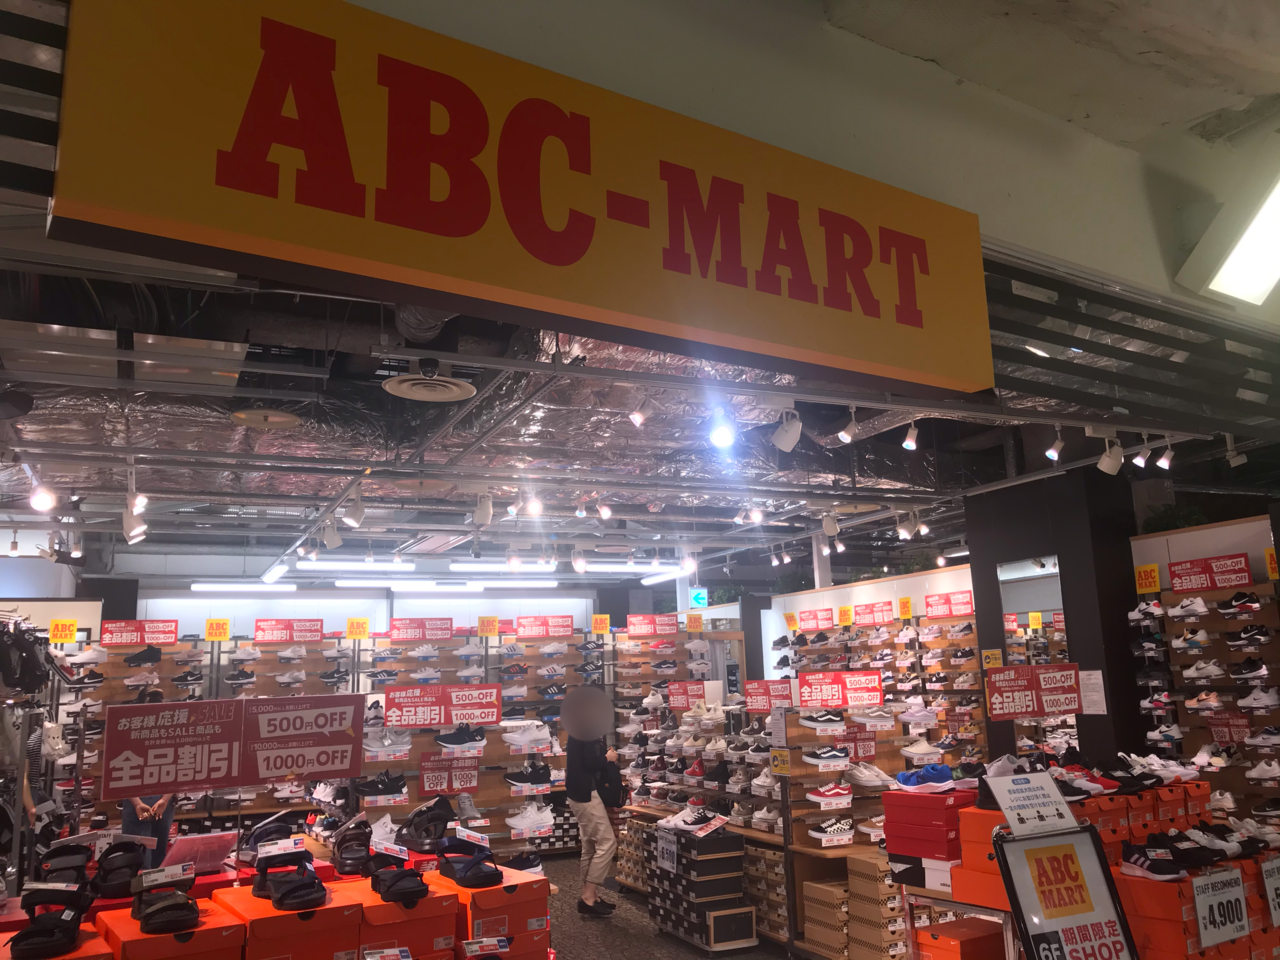 横須賀市 モアーズの Abc Mart が改装工事 代替店で営業中 号外net 横須賀市 三浦市